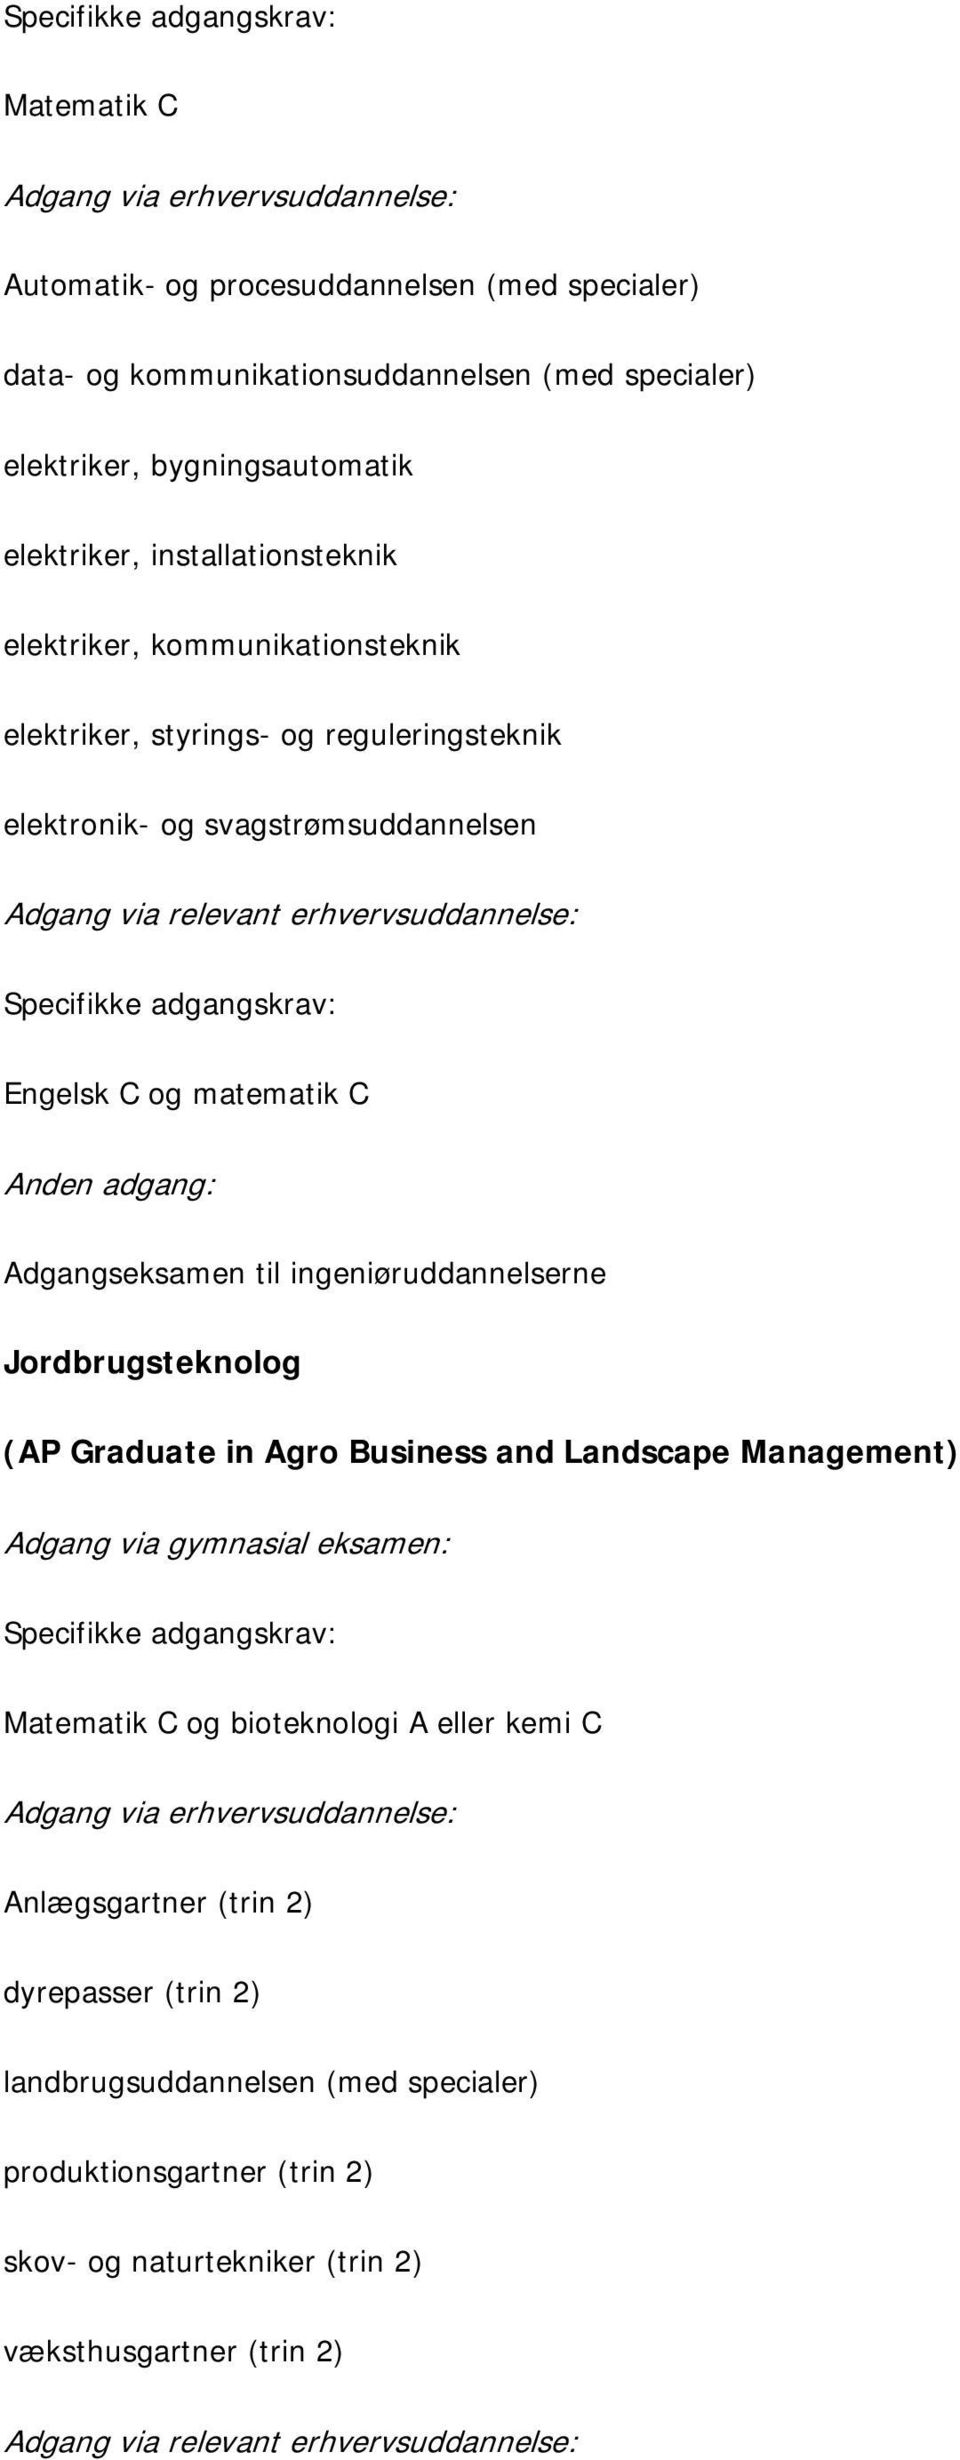 erhvervsuddannelse: Engelsk C og matematik C Jordbrugsteknolog (AP Graduate in Agro Business and Landscape Management) Matematik C og bioteknologi A eller kemi C